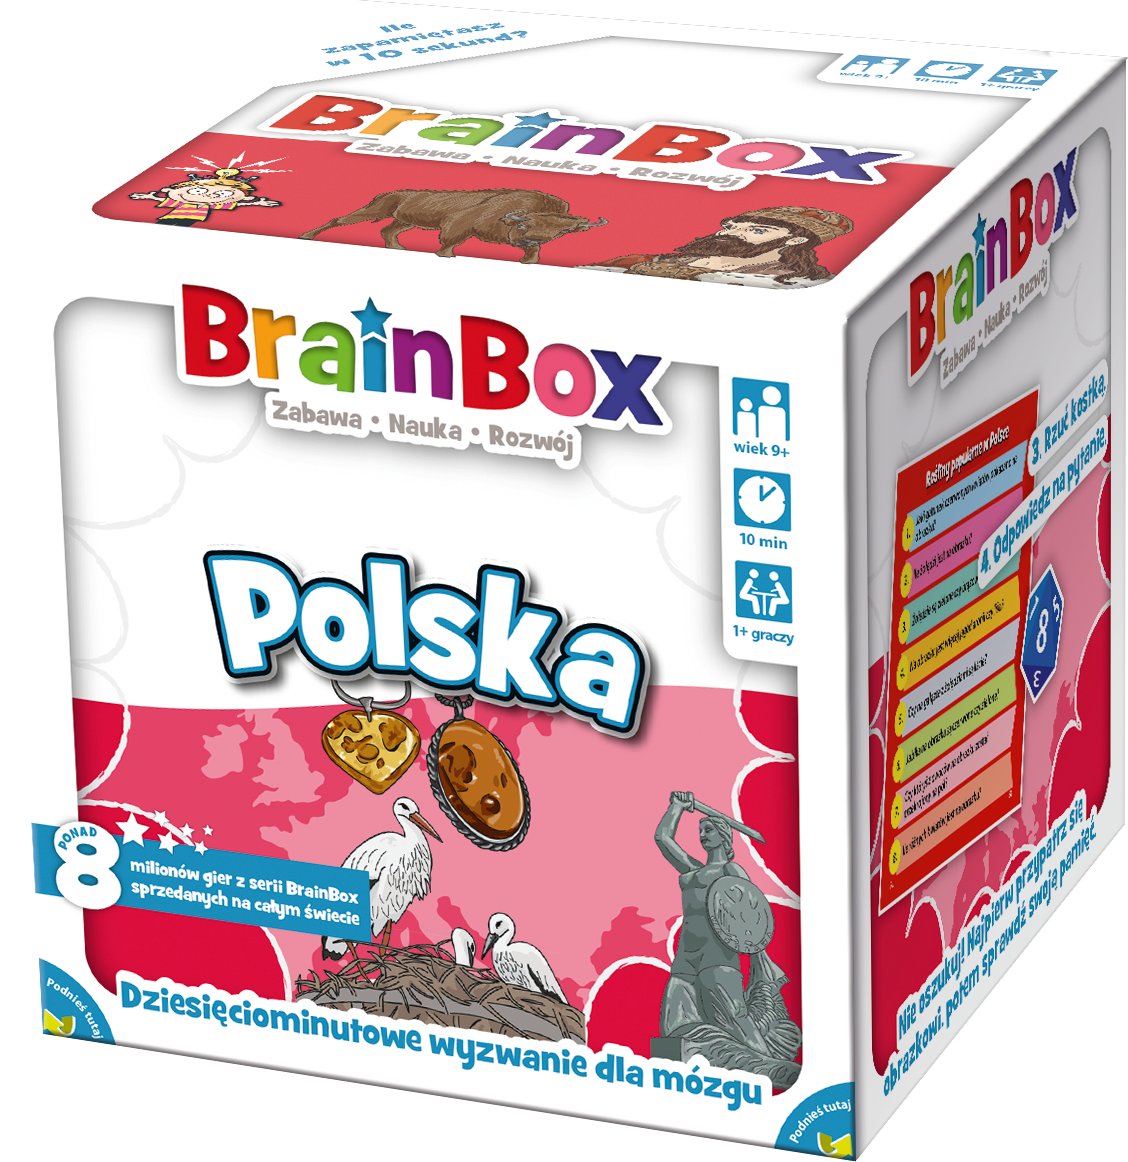 BrainBox - Polska (druga edycja) gra edukacyjna Rebel